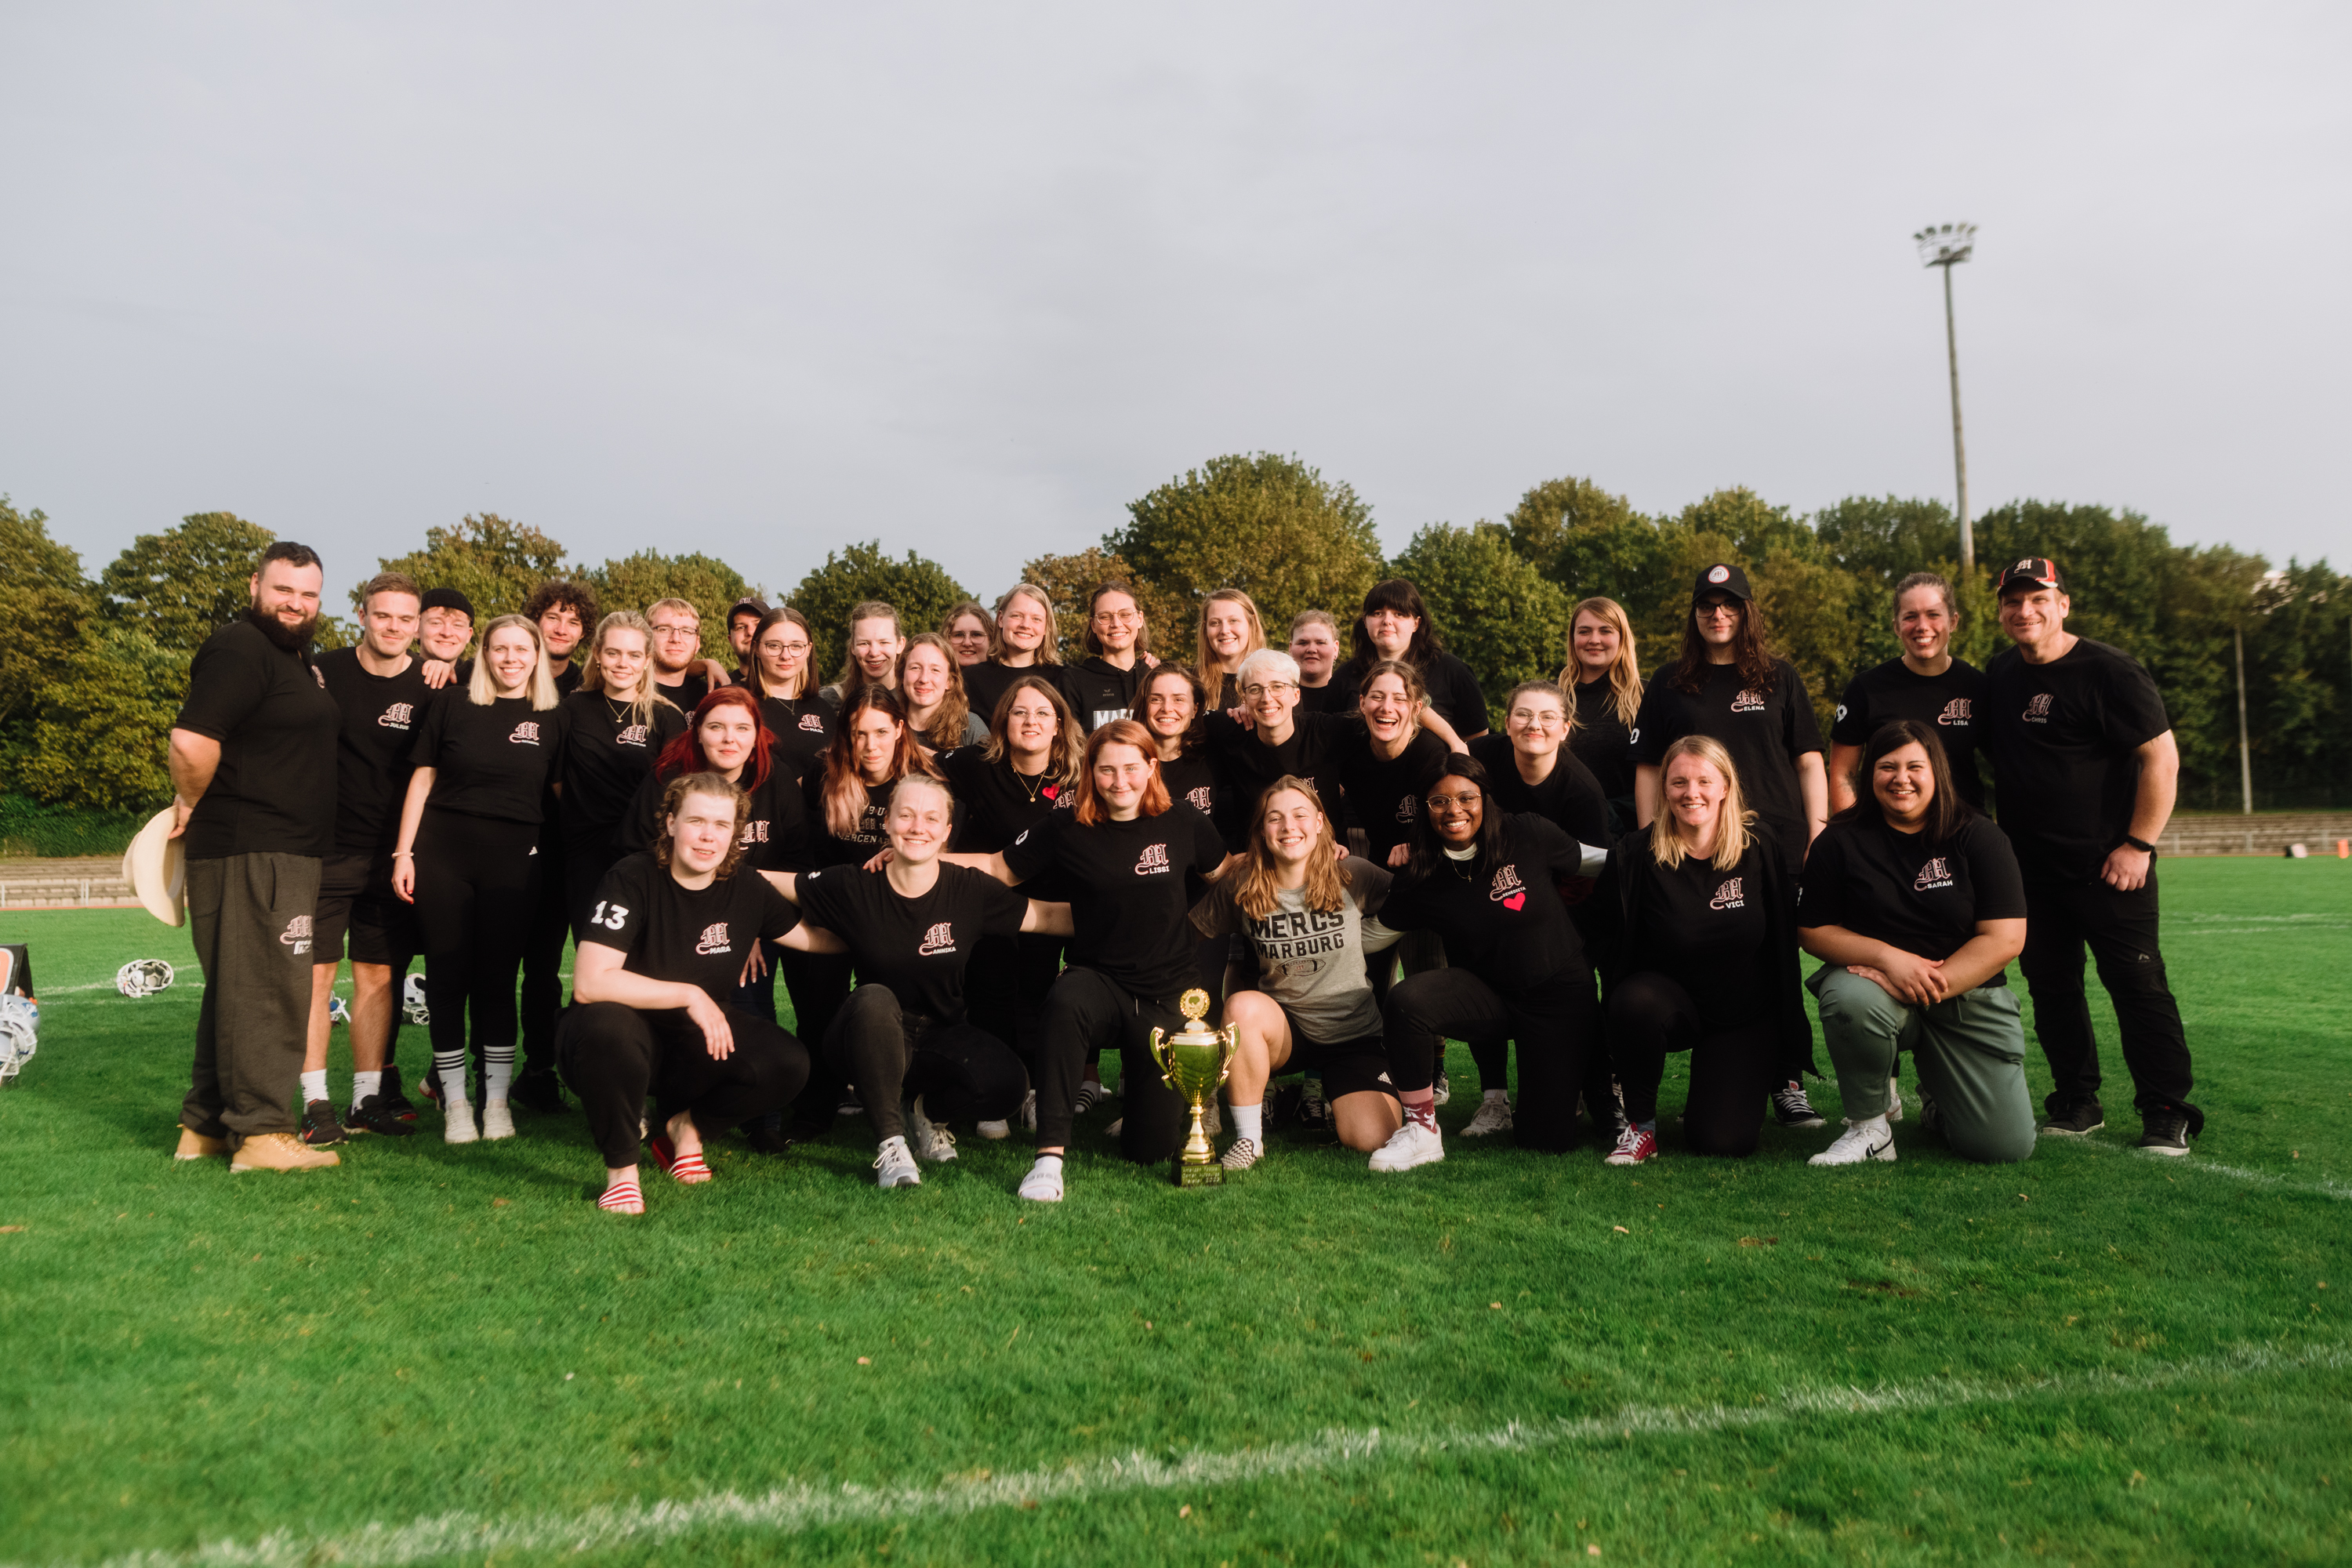 Die Marburg Mercenaries Damen sind erneut Meister - Letzter Spieltag der Damenaufbauliga Hessen geht erfolgreich zu Ende